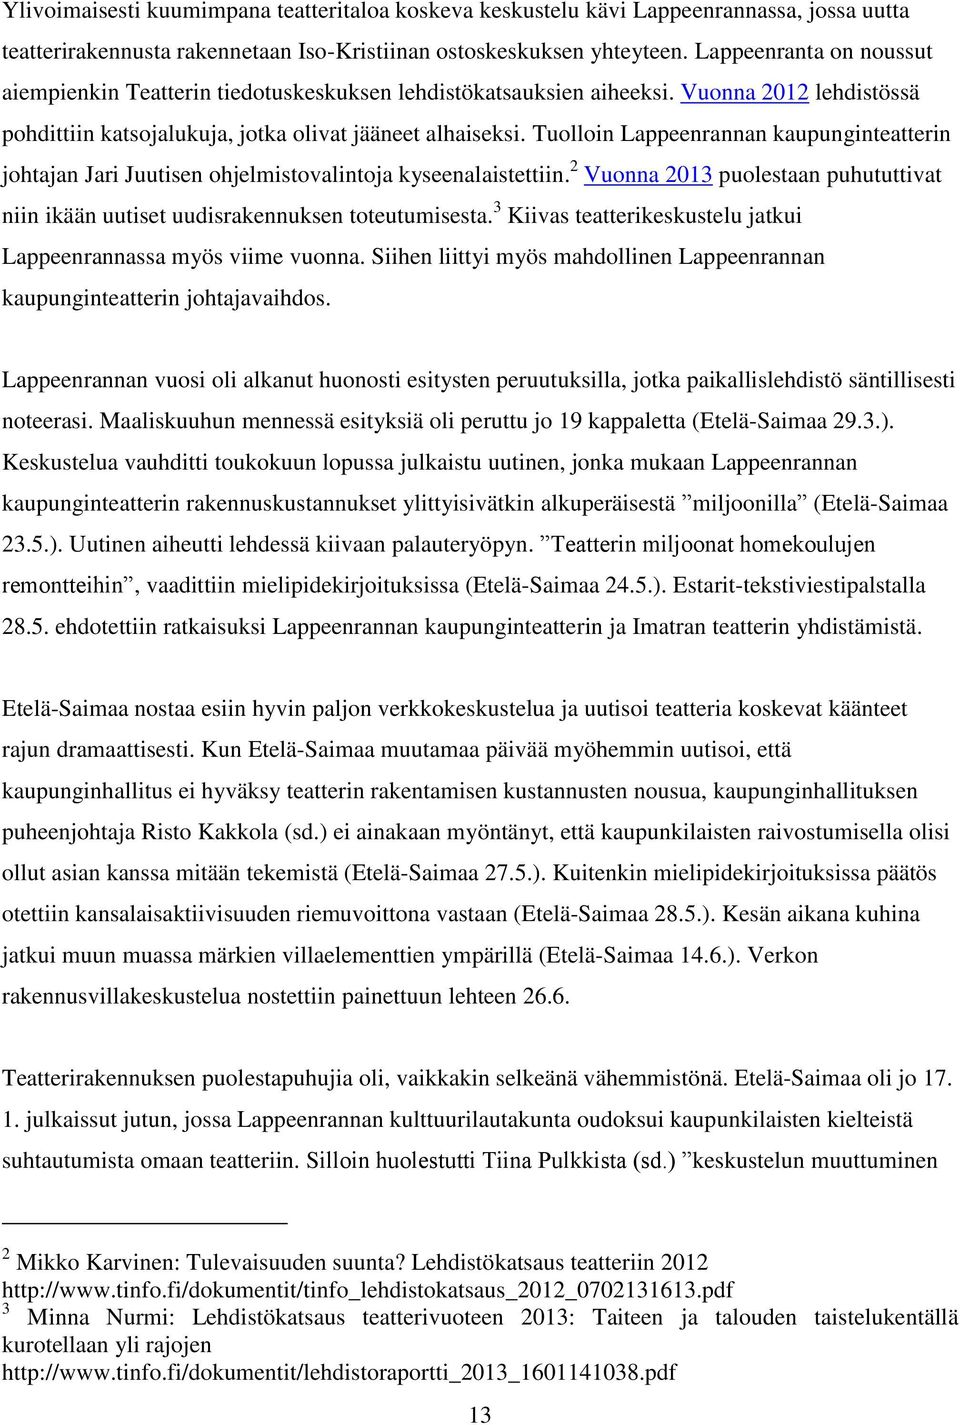 Tuolloin Lappeenrannan kaupunginteatterin johtajan Jari Juutisen ohjelmistovalintoja kyseenalaistettiin. 2 Vuonna 2013 puolestaan puhututtivat niin ikään uutiset uudisrakennuksen toteutumisesta.